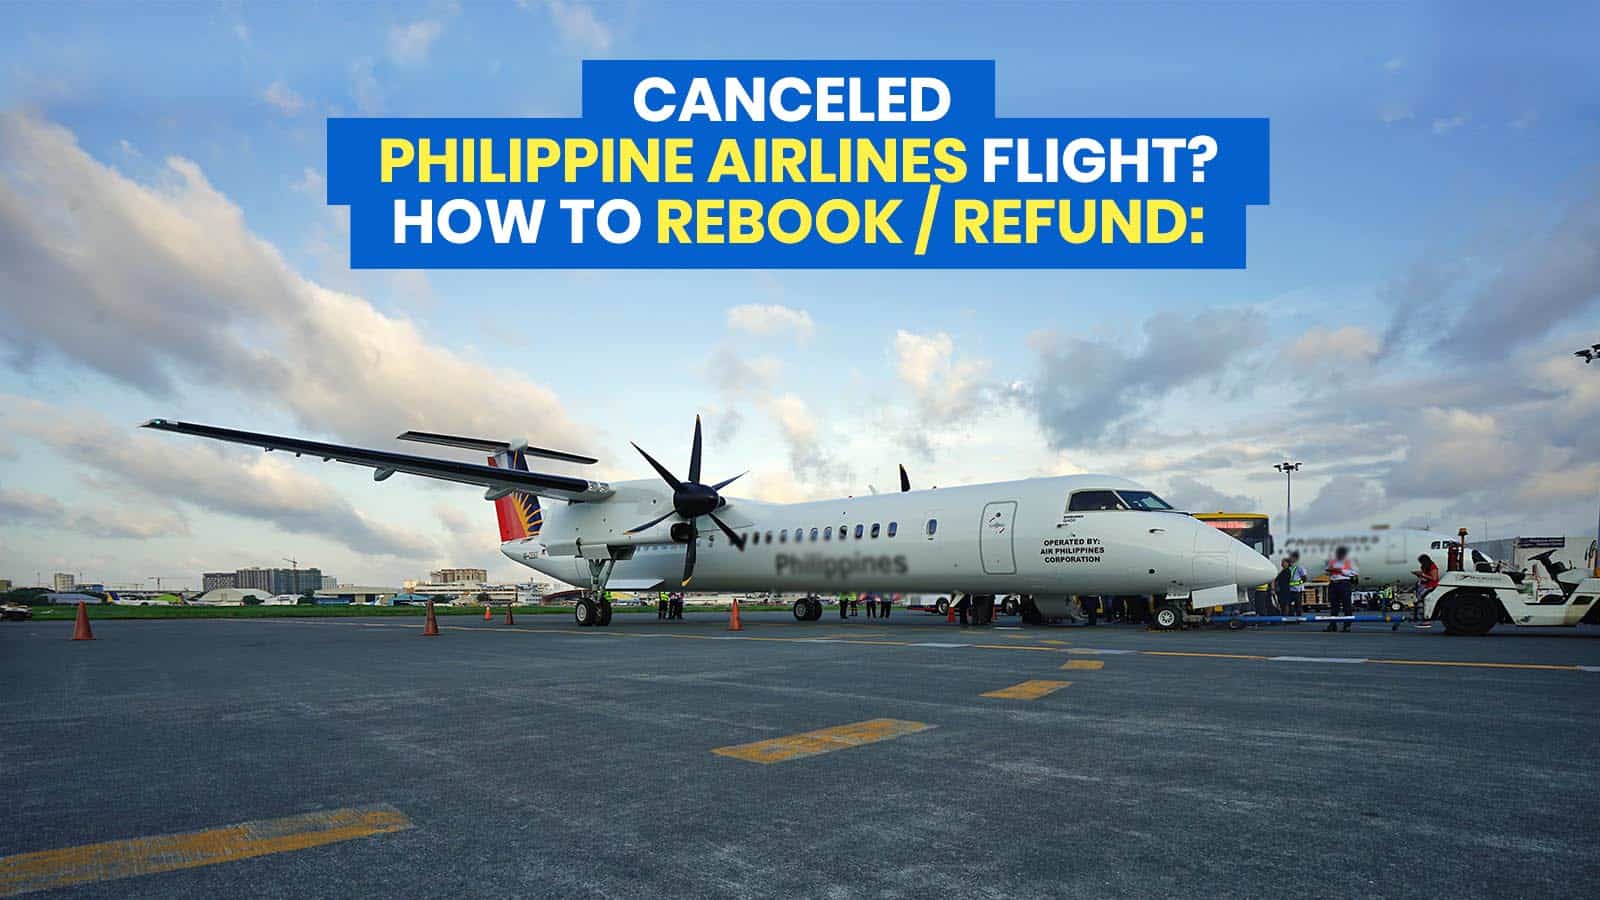 菲律宾航空公司:如何通过MyPAL请求中心重新预订/退款因Covid-19而取消的航班